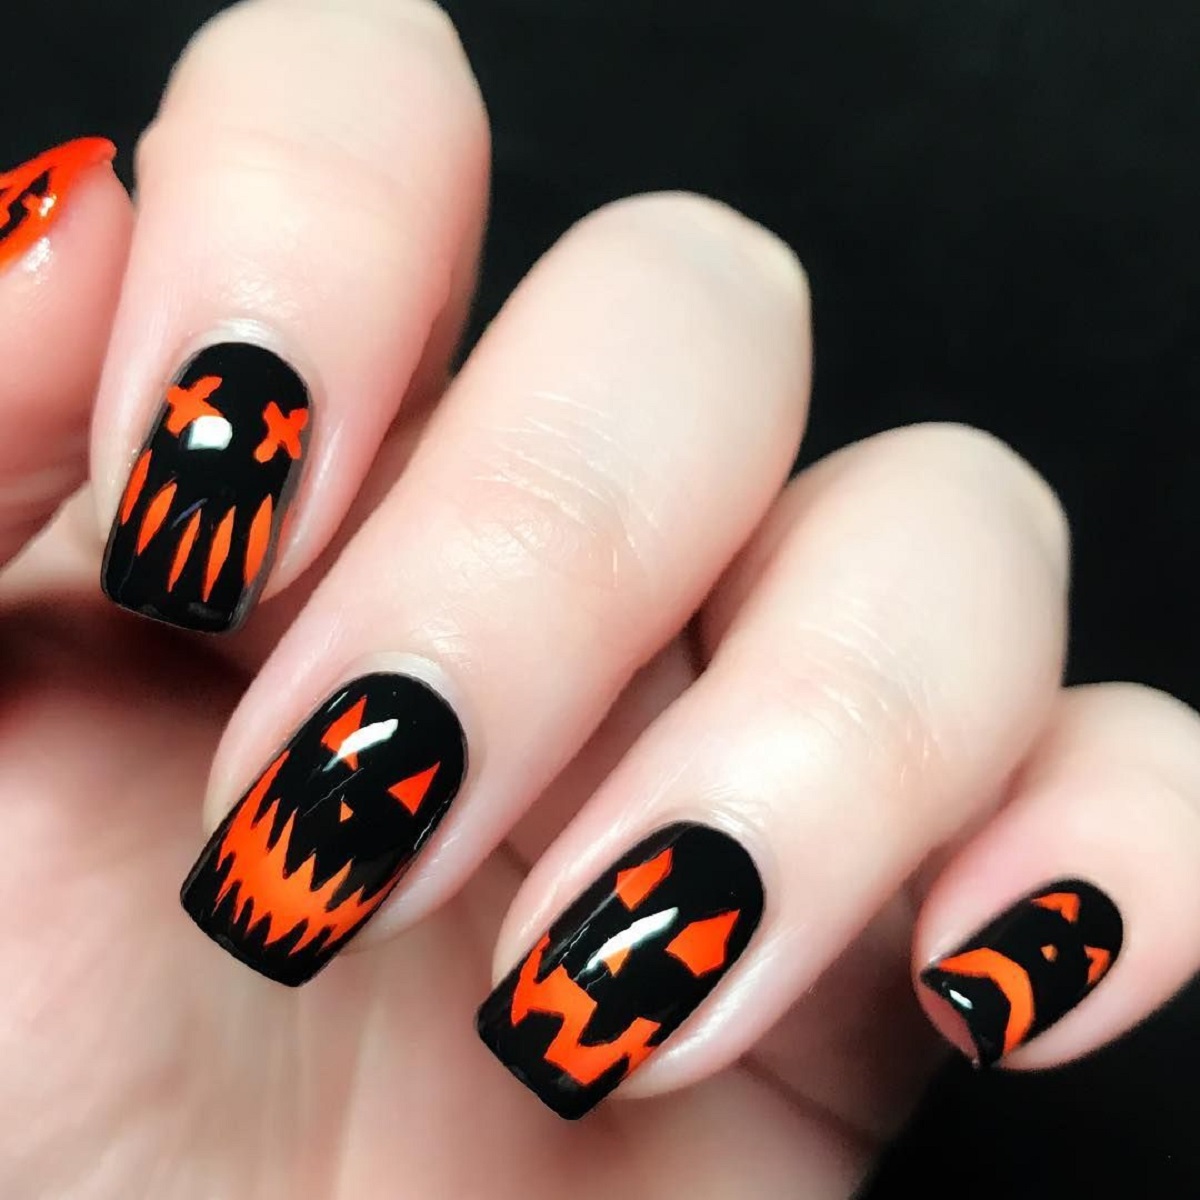 Halloween Nail Art Ideas